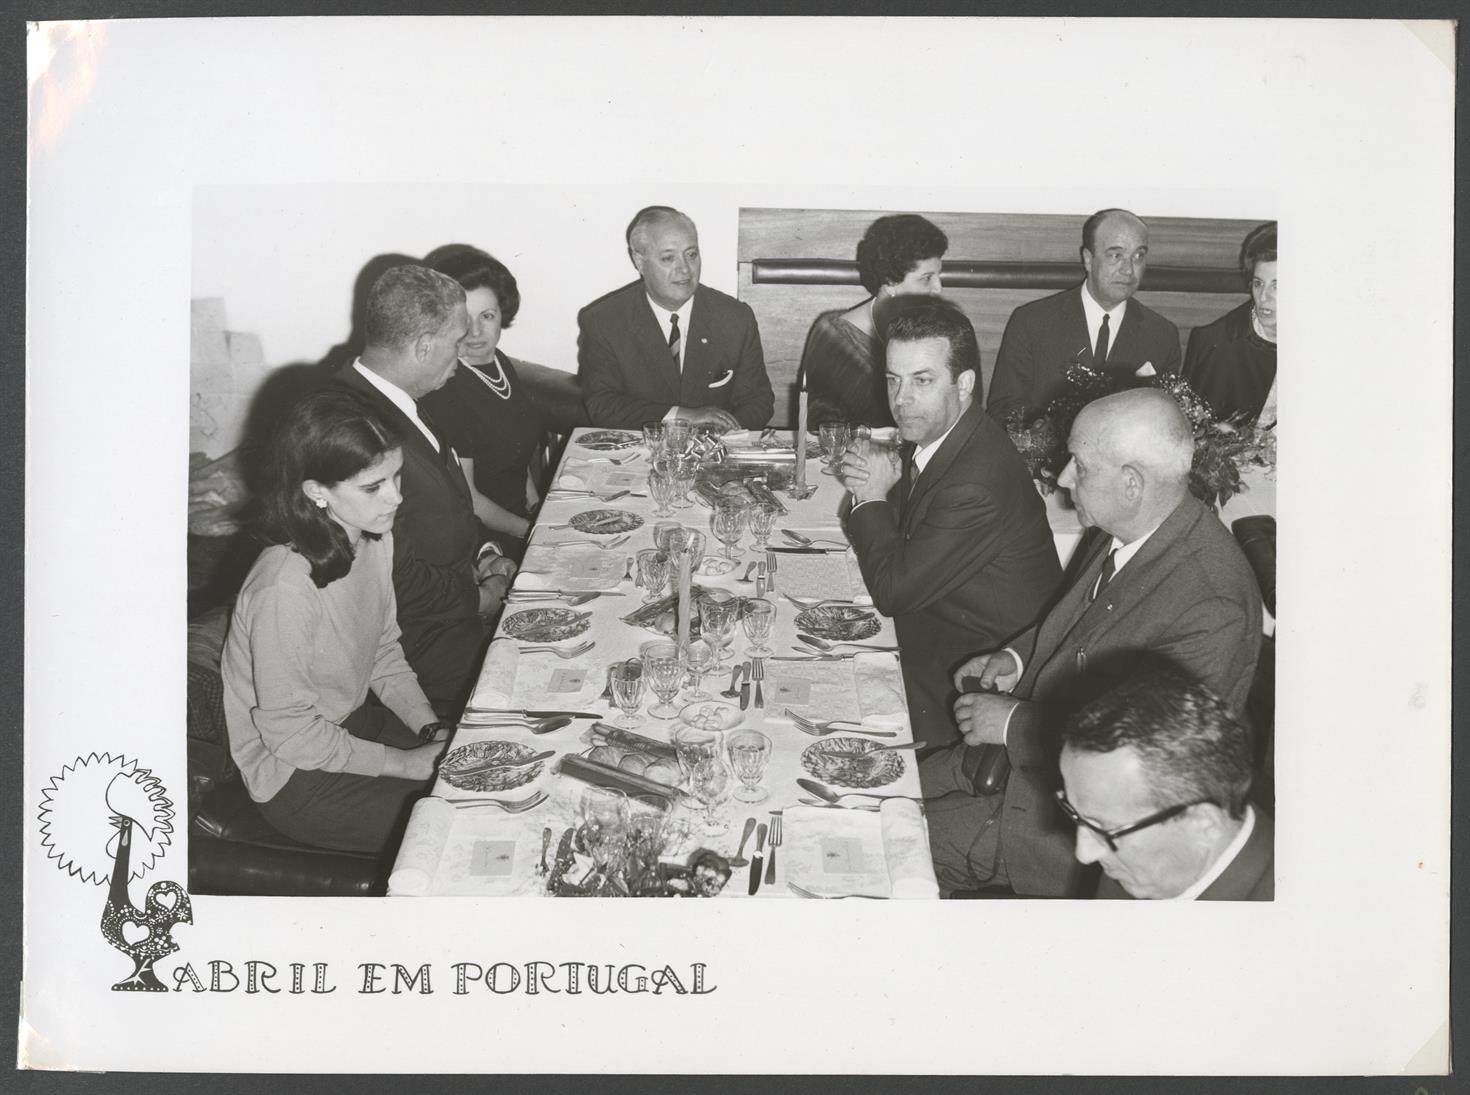 Abril em Portugal : Dia do Turista : almoço regional